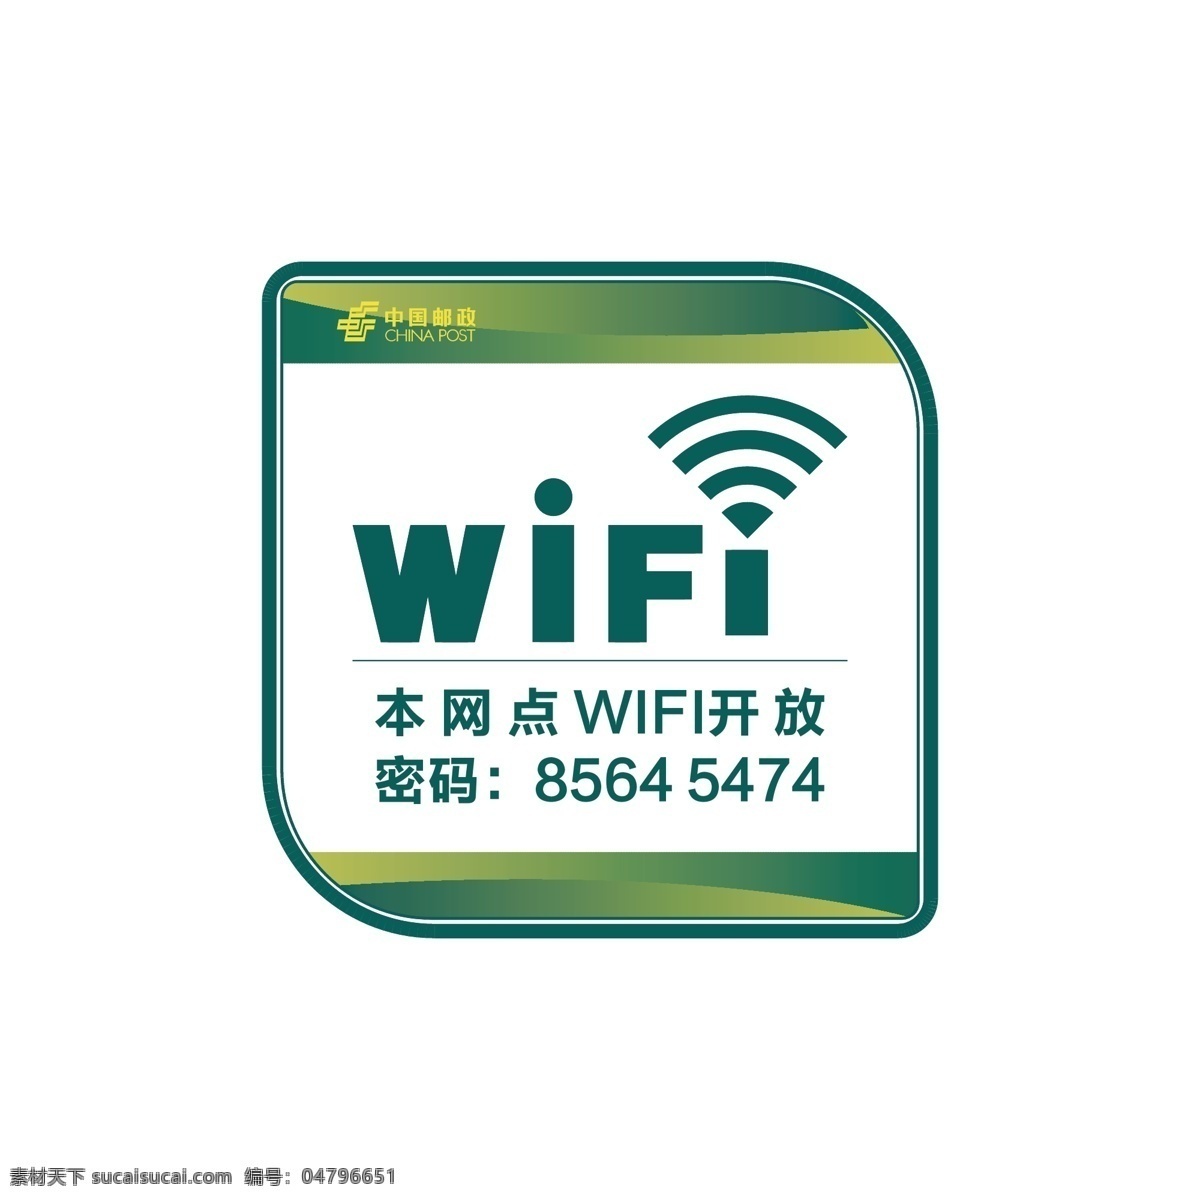 免费wifi 无线 wifi 图标 无线网络 开放wifi 底纹边框 其他素材